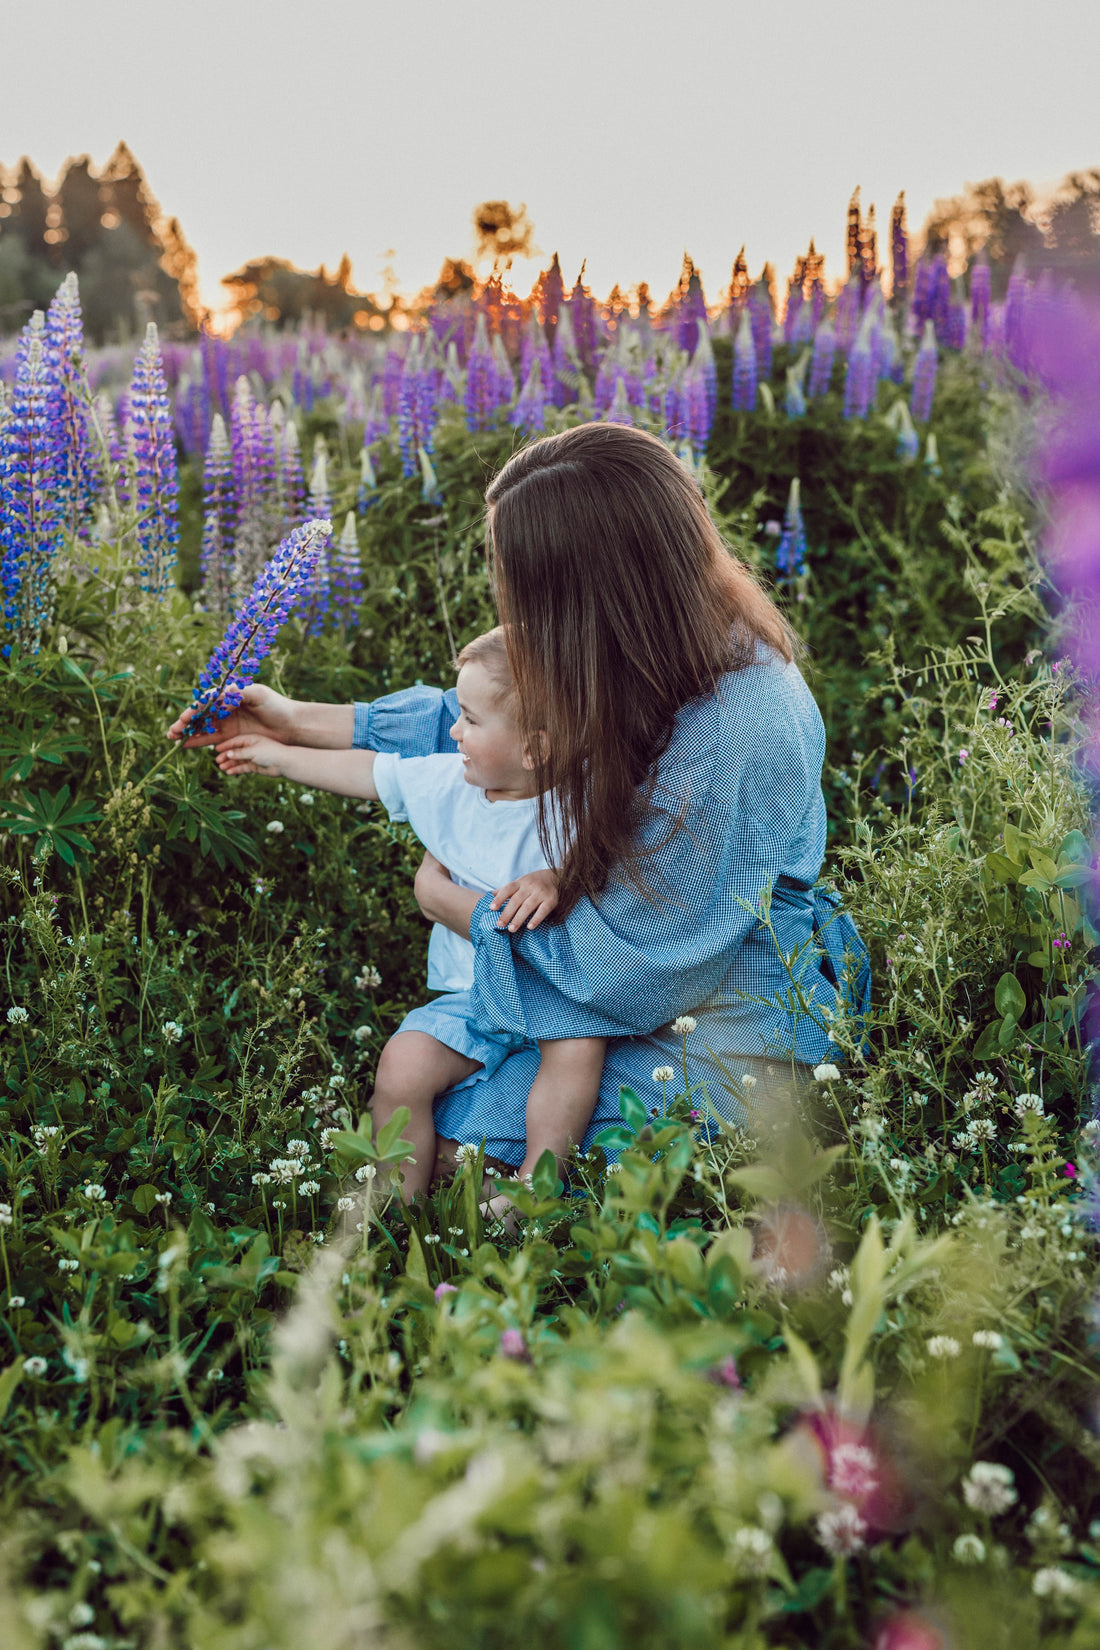 Bébé dans les bras de sa maman au milieu d'un champ de fleurs violettes. Eveil en nature. Photo de Liana Mikah, source Unsplash.